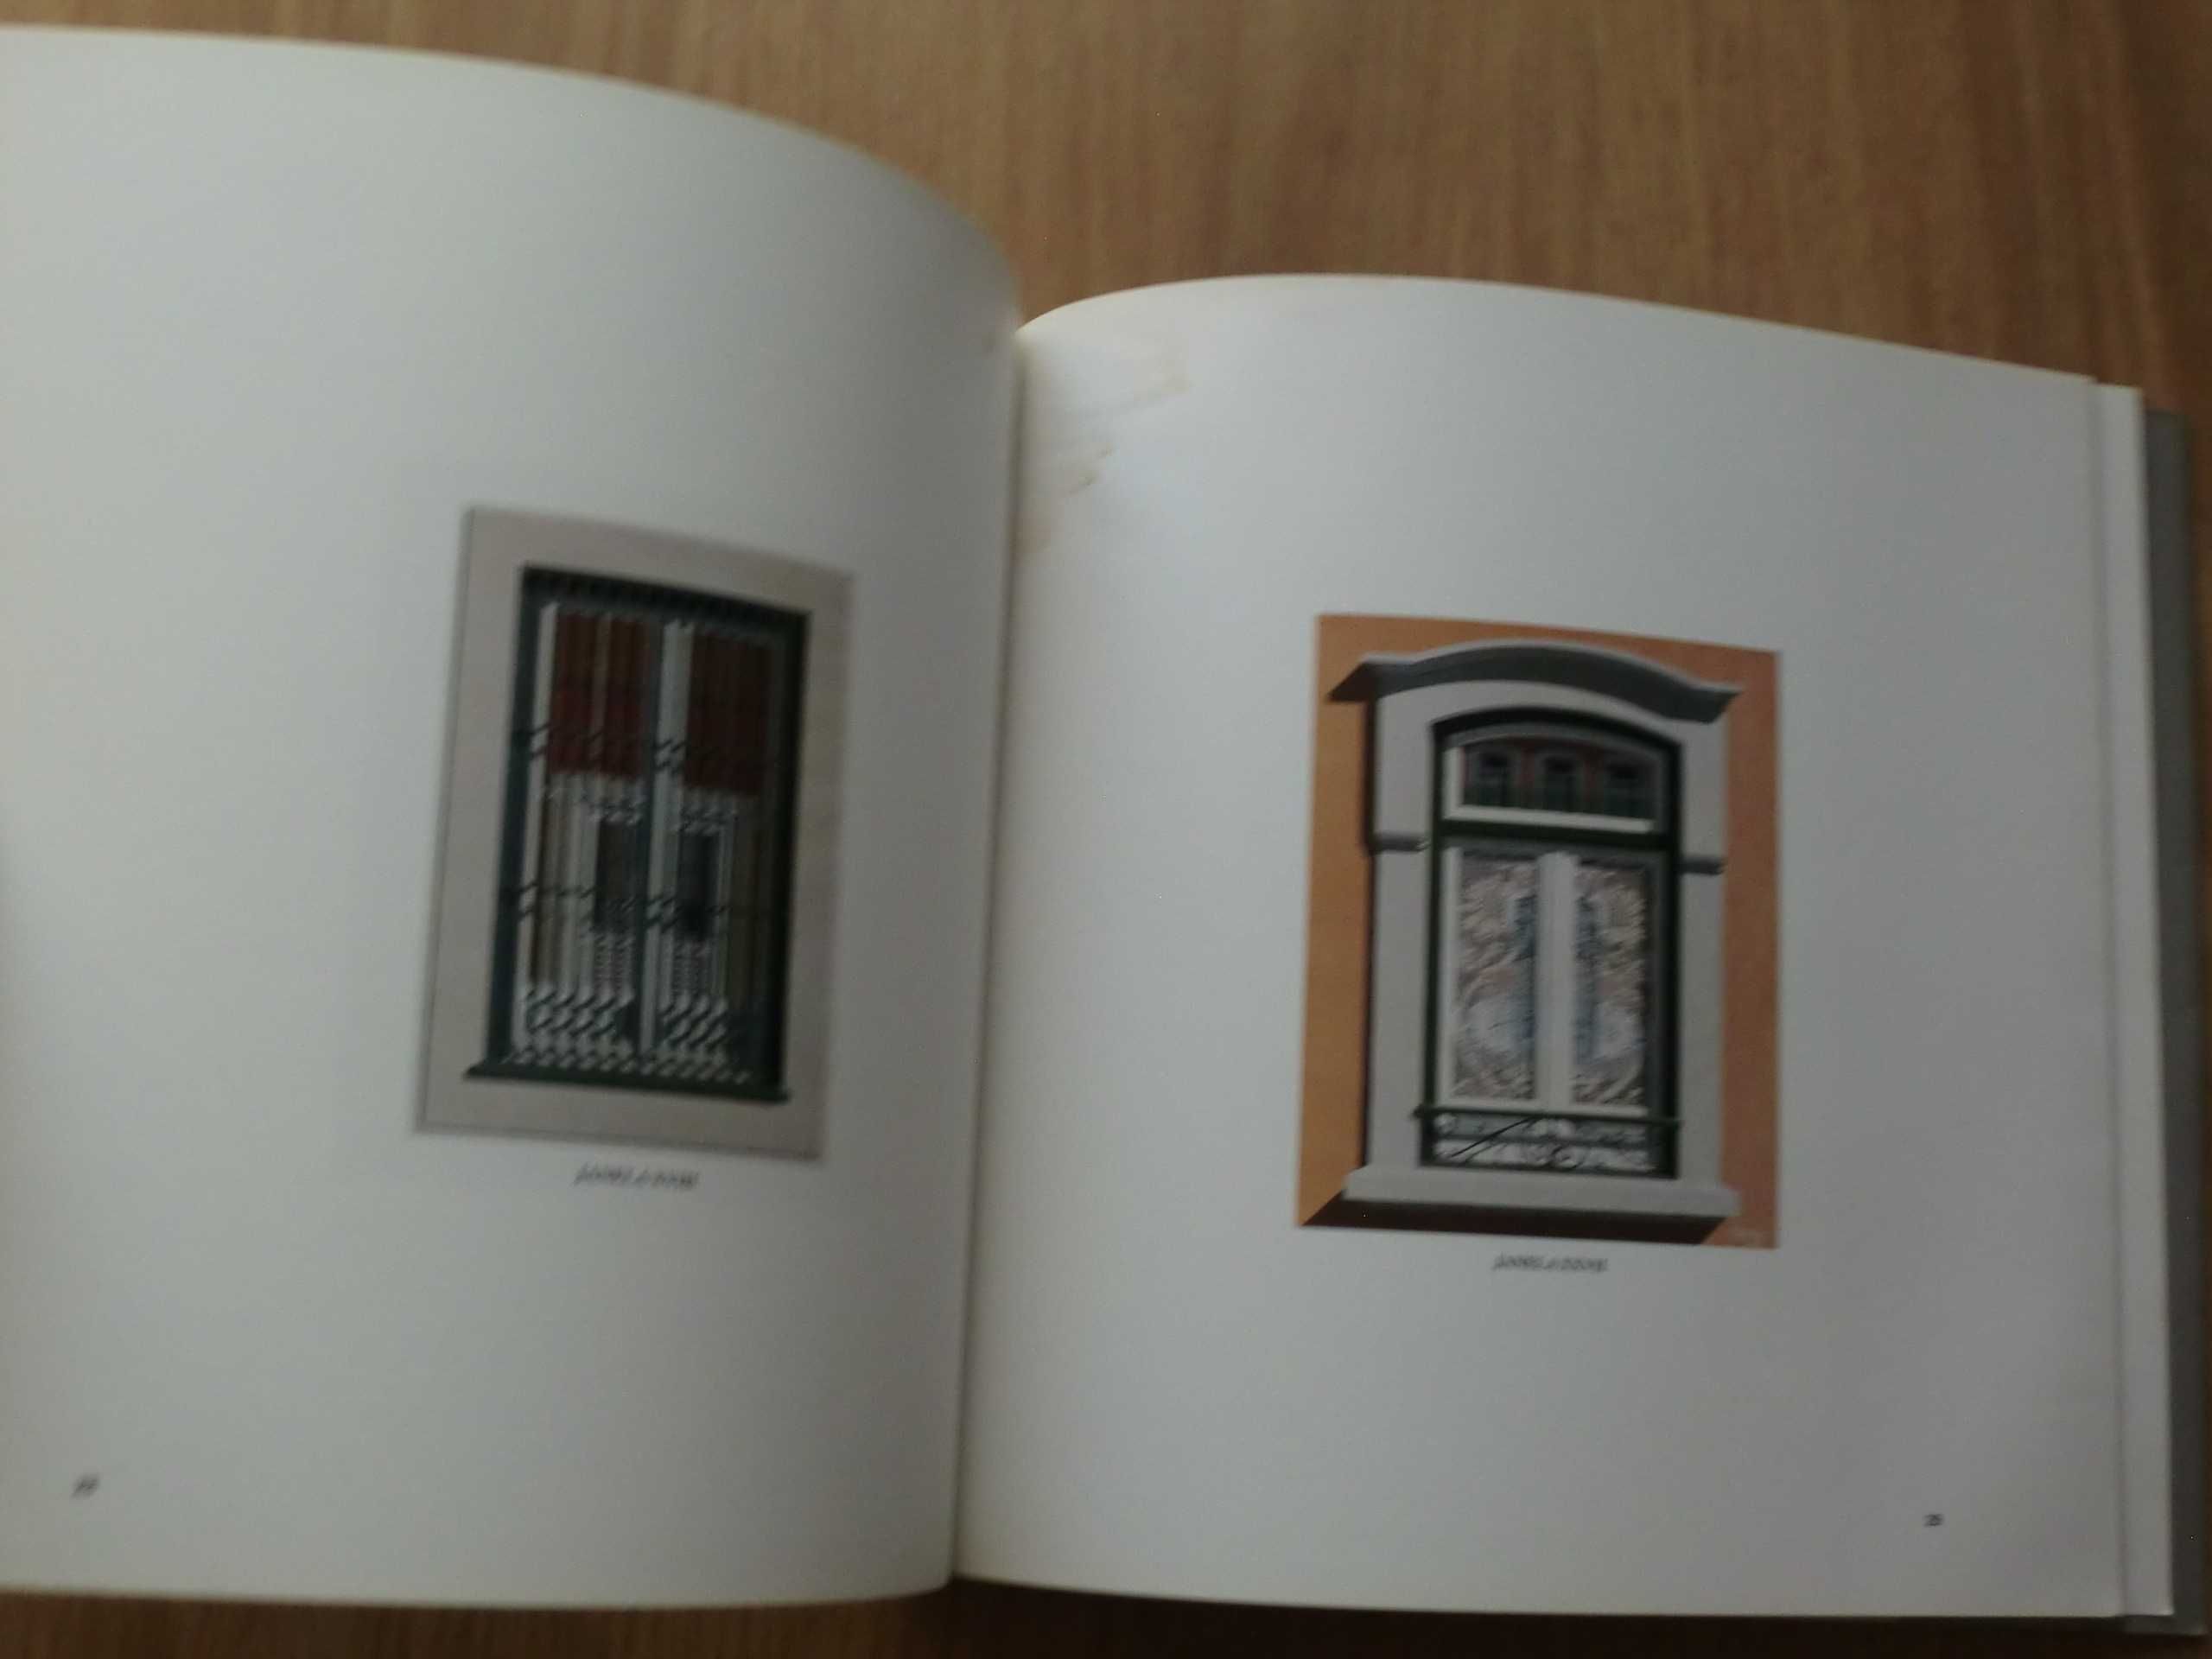 Maluda - Catálogo de exposição 1989